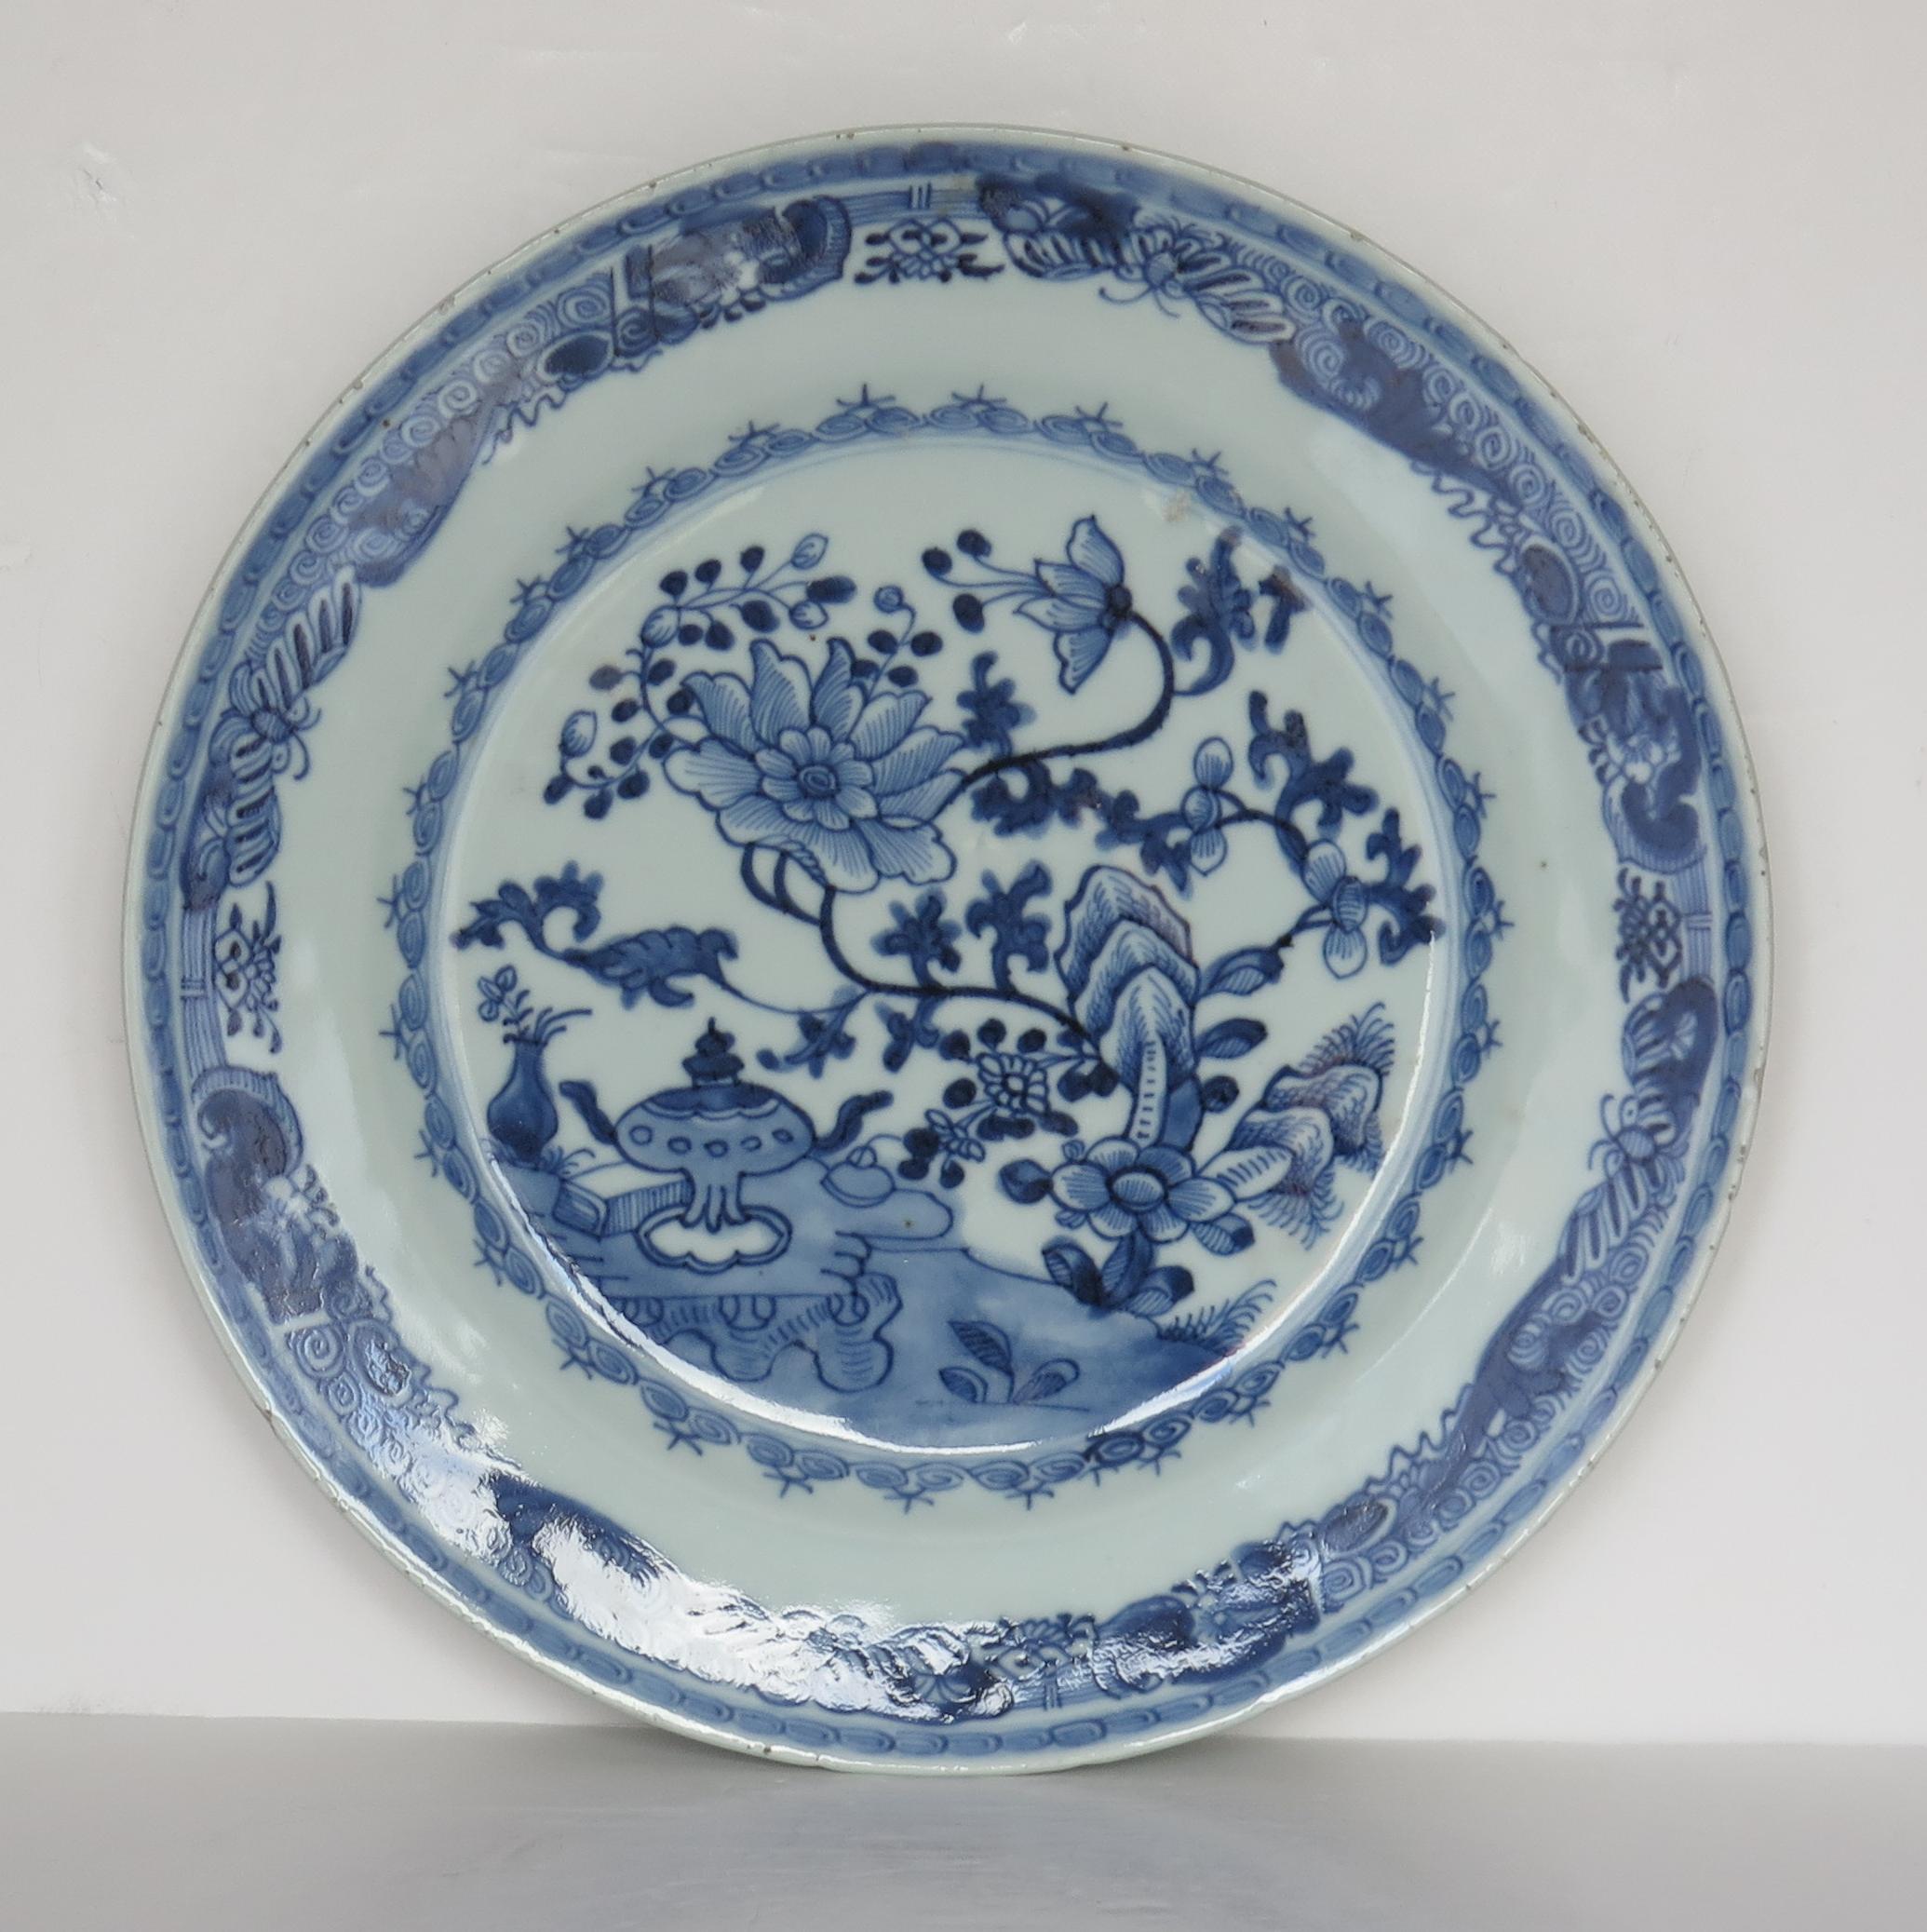 Il s'agit d'une très bonne grande assiette en porcelaine chinoise, fabriquée pour le marché d'exportation (Canton), au milieu du 18e siècle, période Qing-Qianlong.

L'assiette est décorée à la main avec beaucoup de détails dans des tons variés de